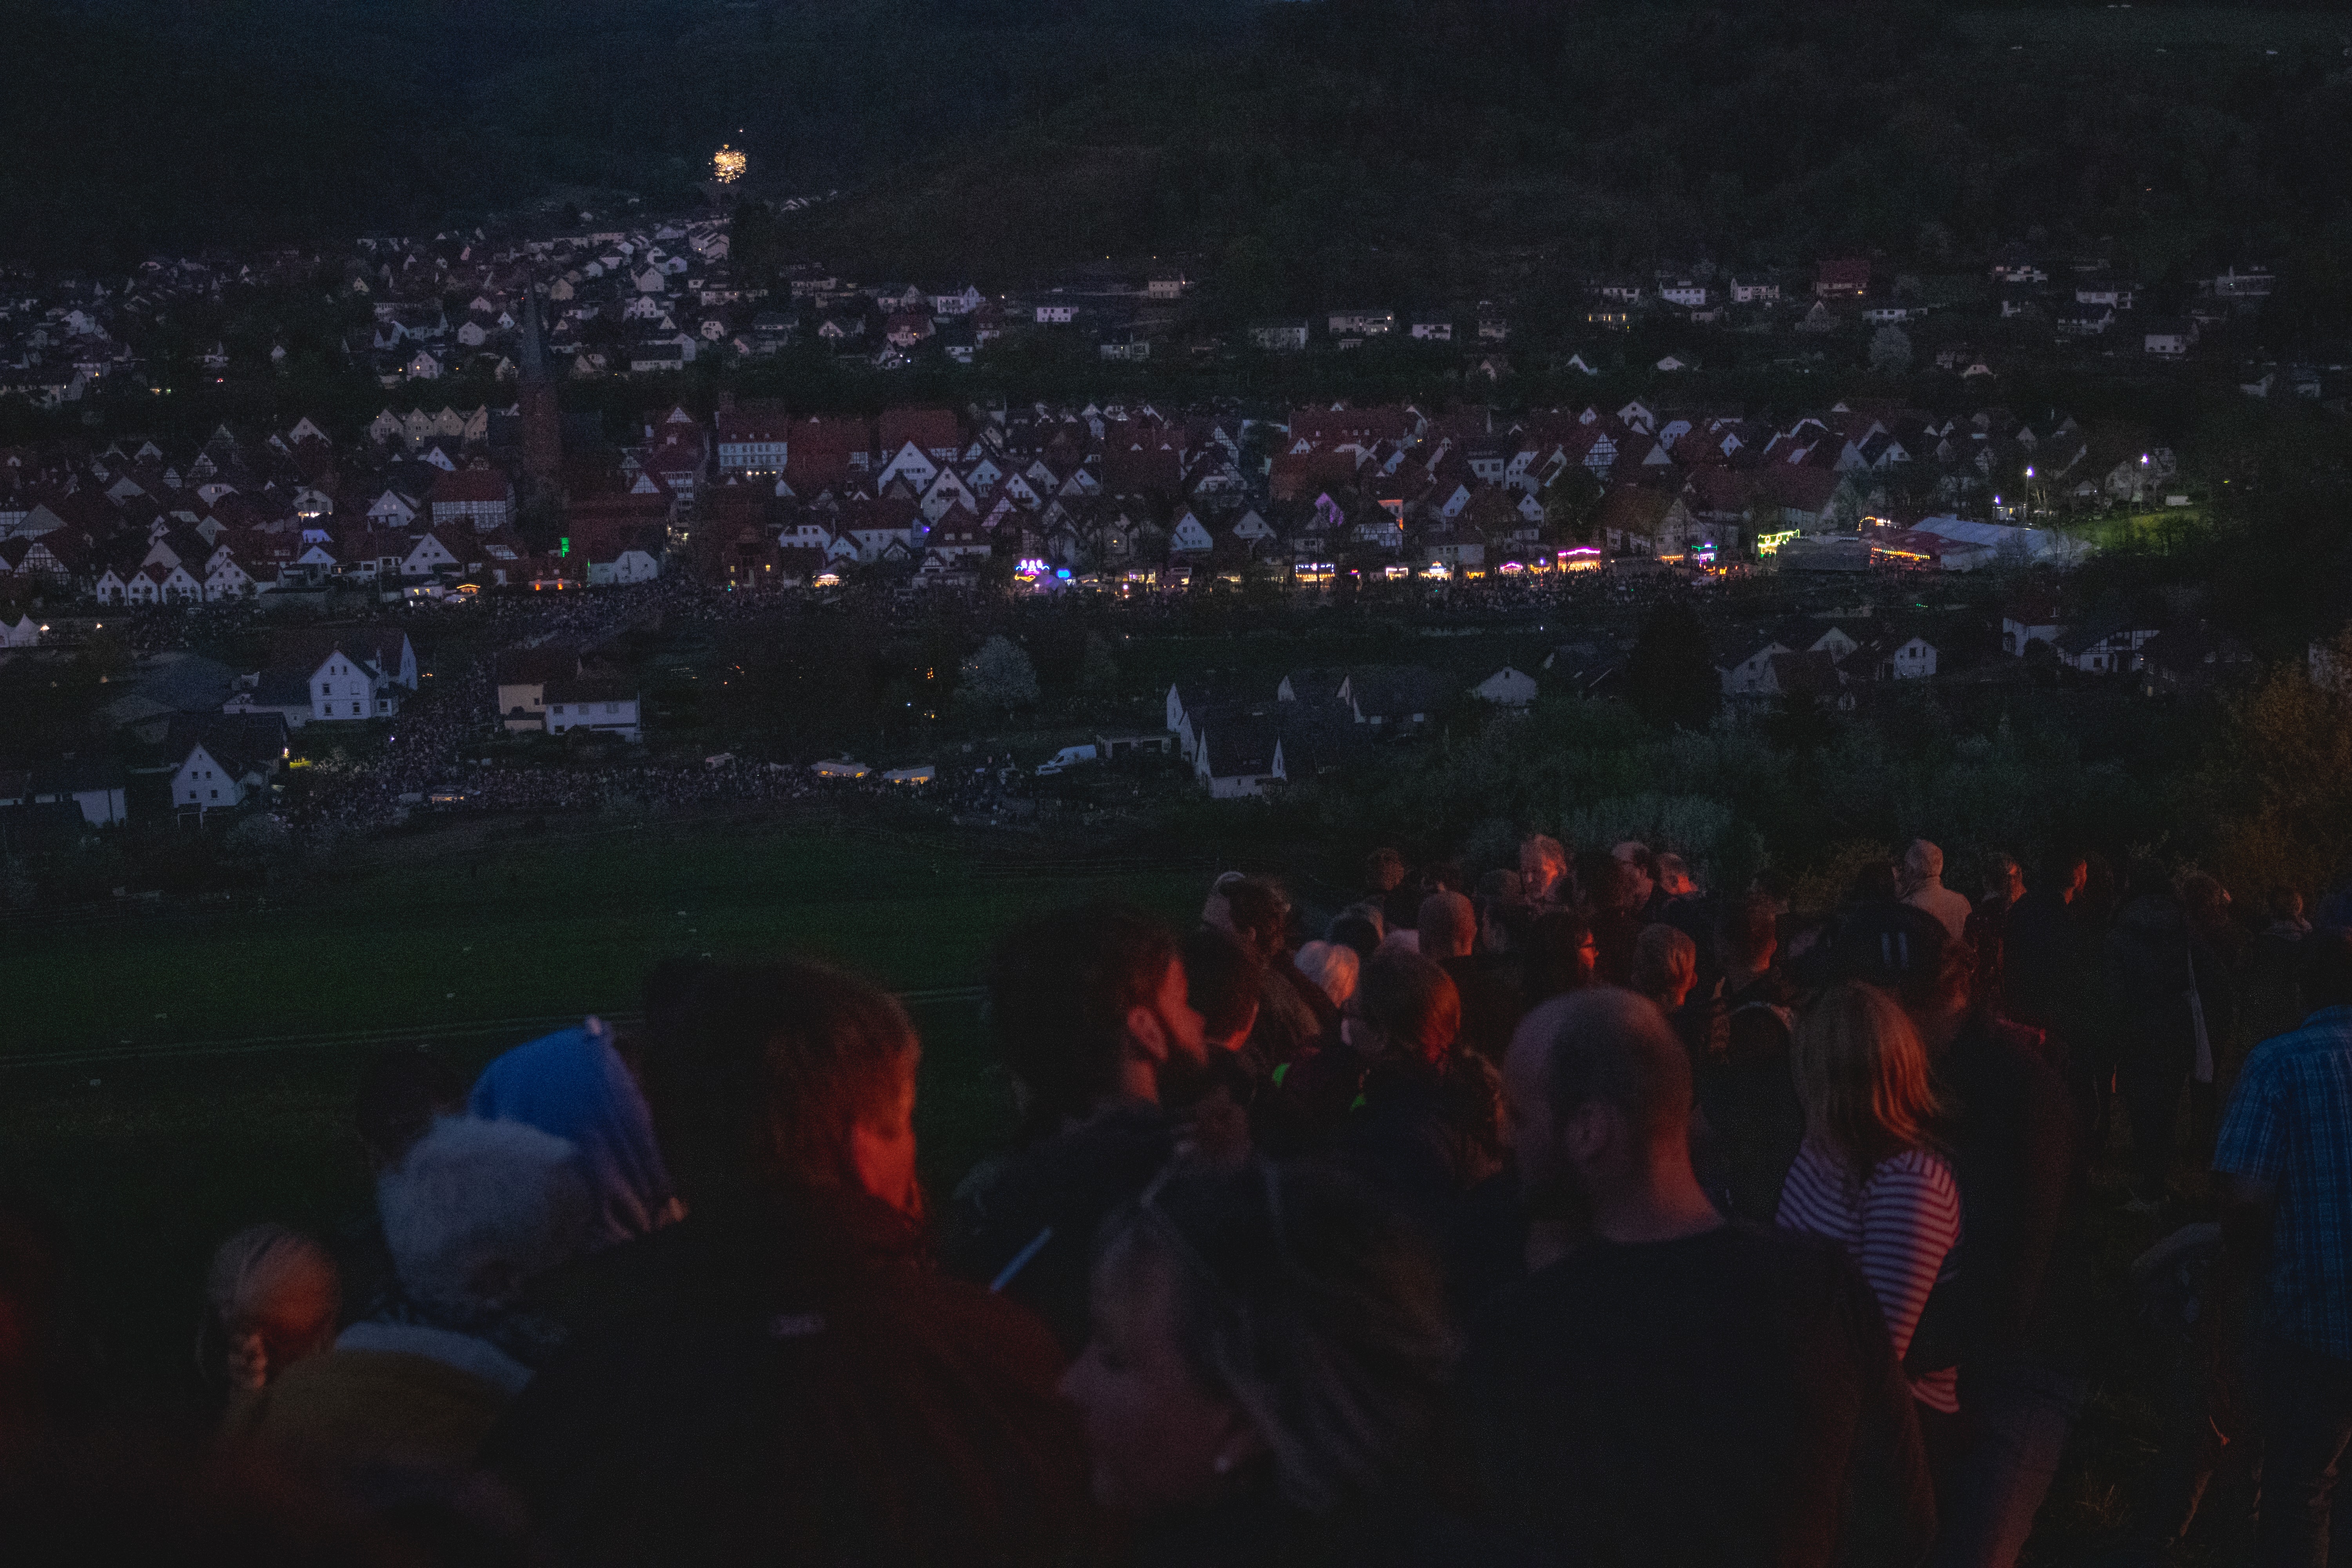 Bei Einbruch der Dunkelheit versammeln sich die Menschen sowohl oben auf dem Berg, als auch unten im Zuschauerbereich